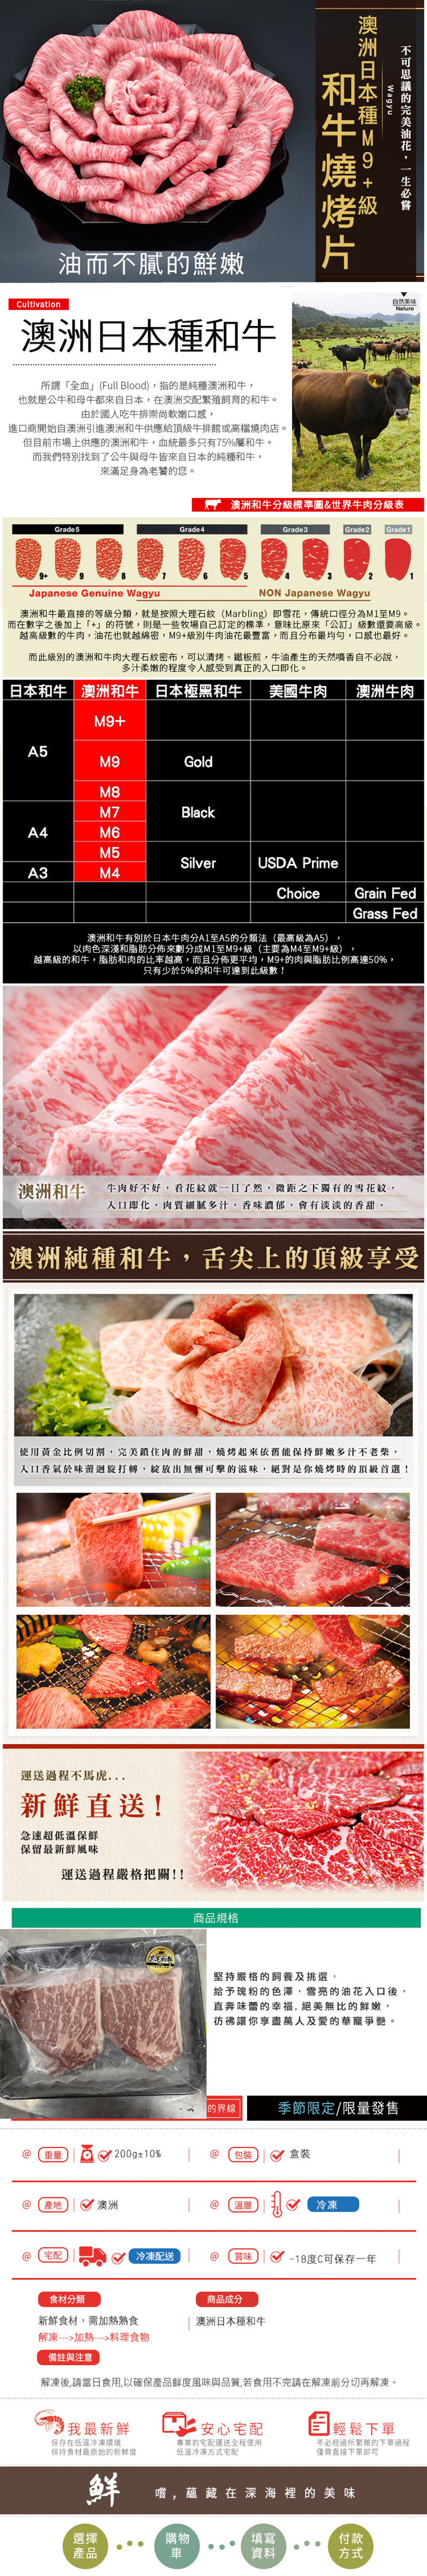 【極鮮配】頂級M9+凝脂和牛肉片 200公克±10%/盒